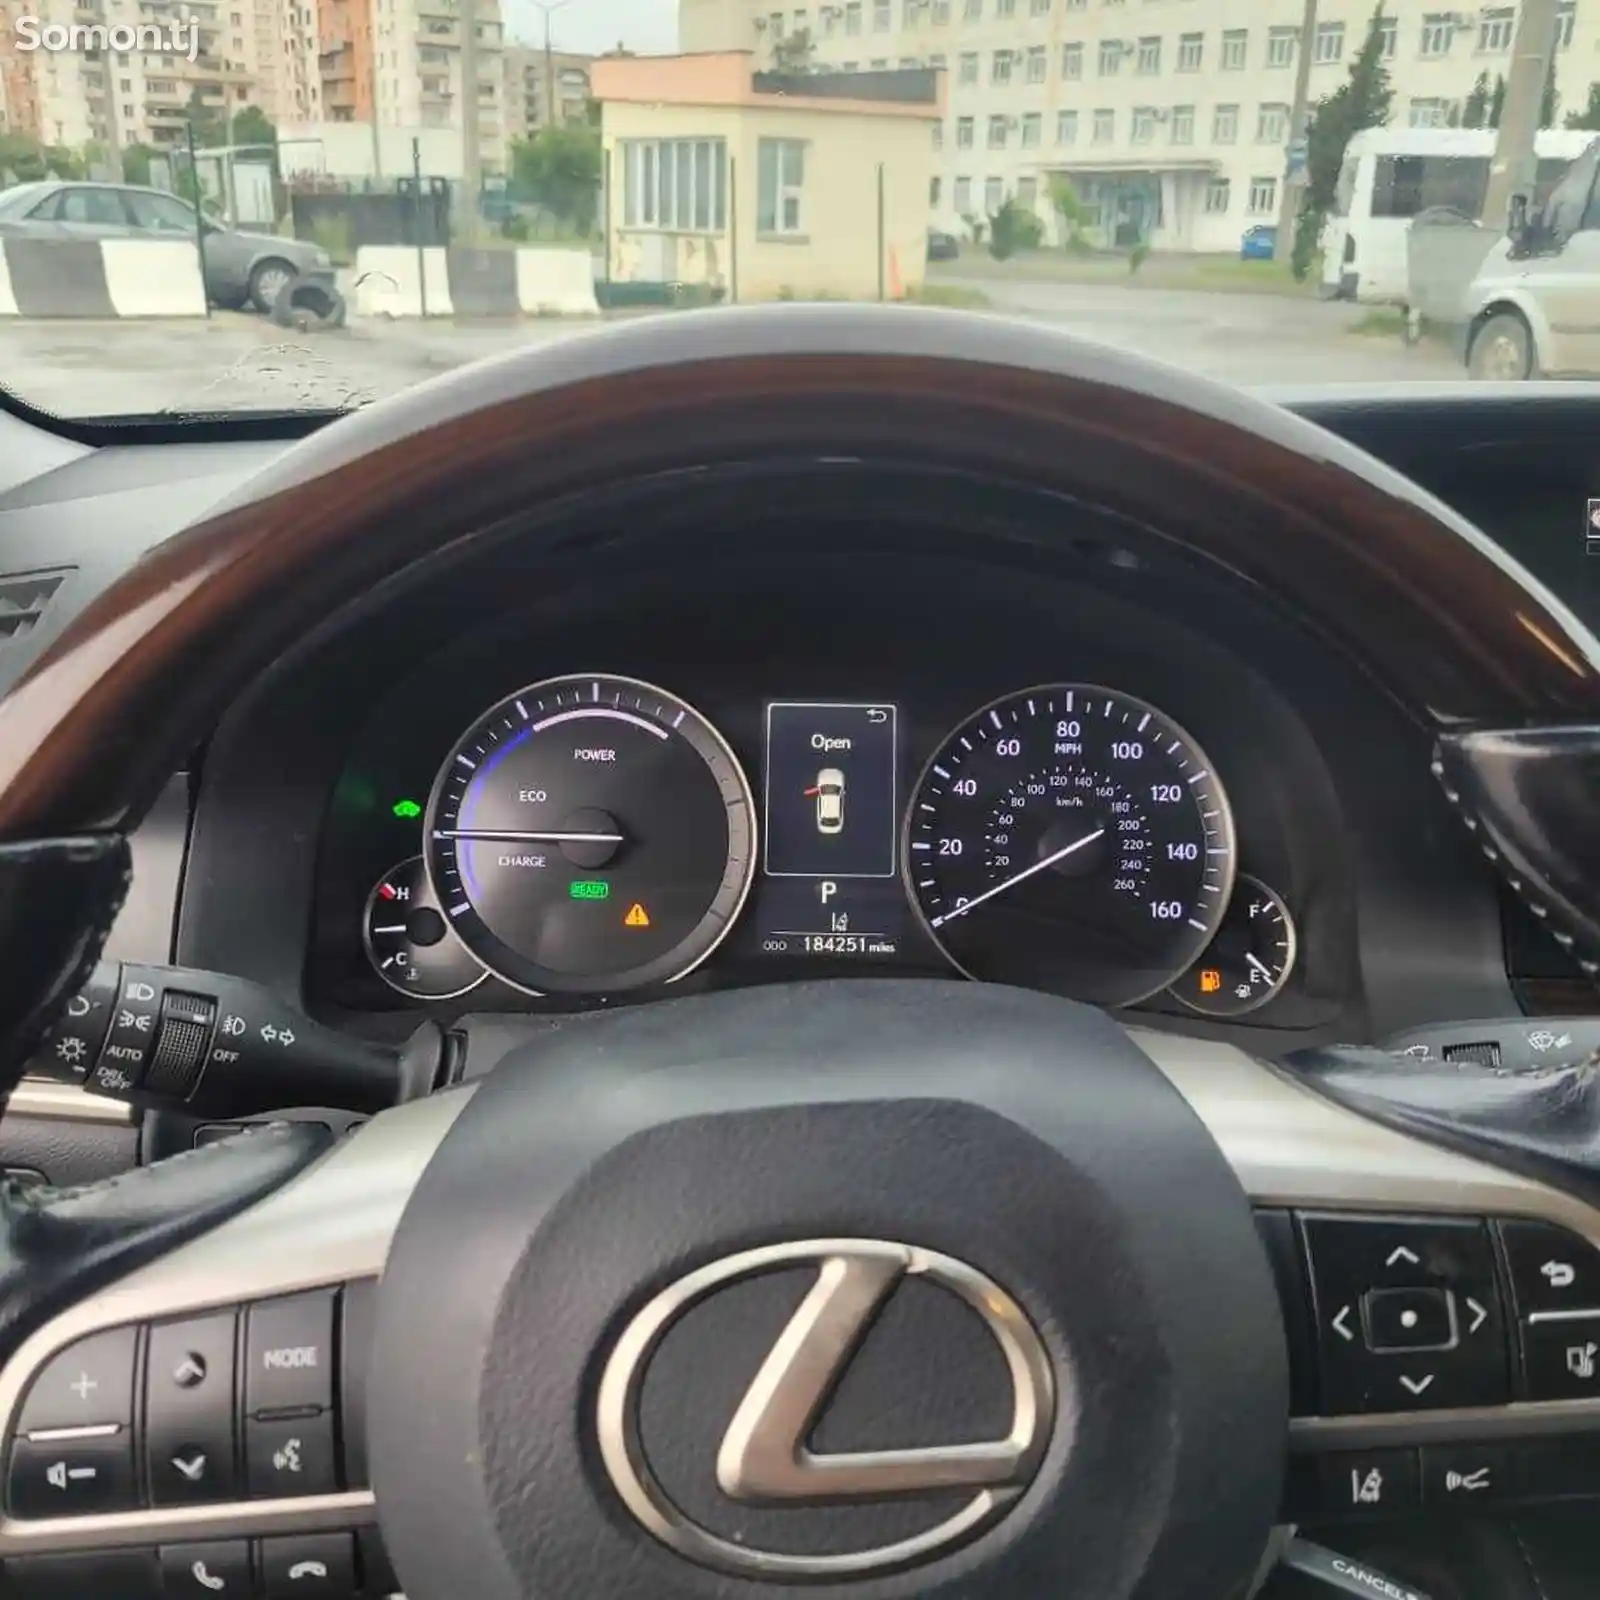 Lexus ES series, 2017-2